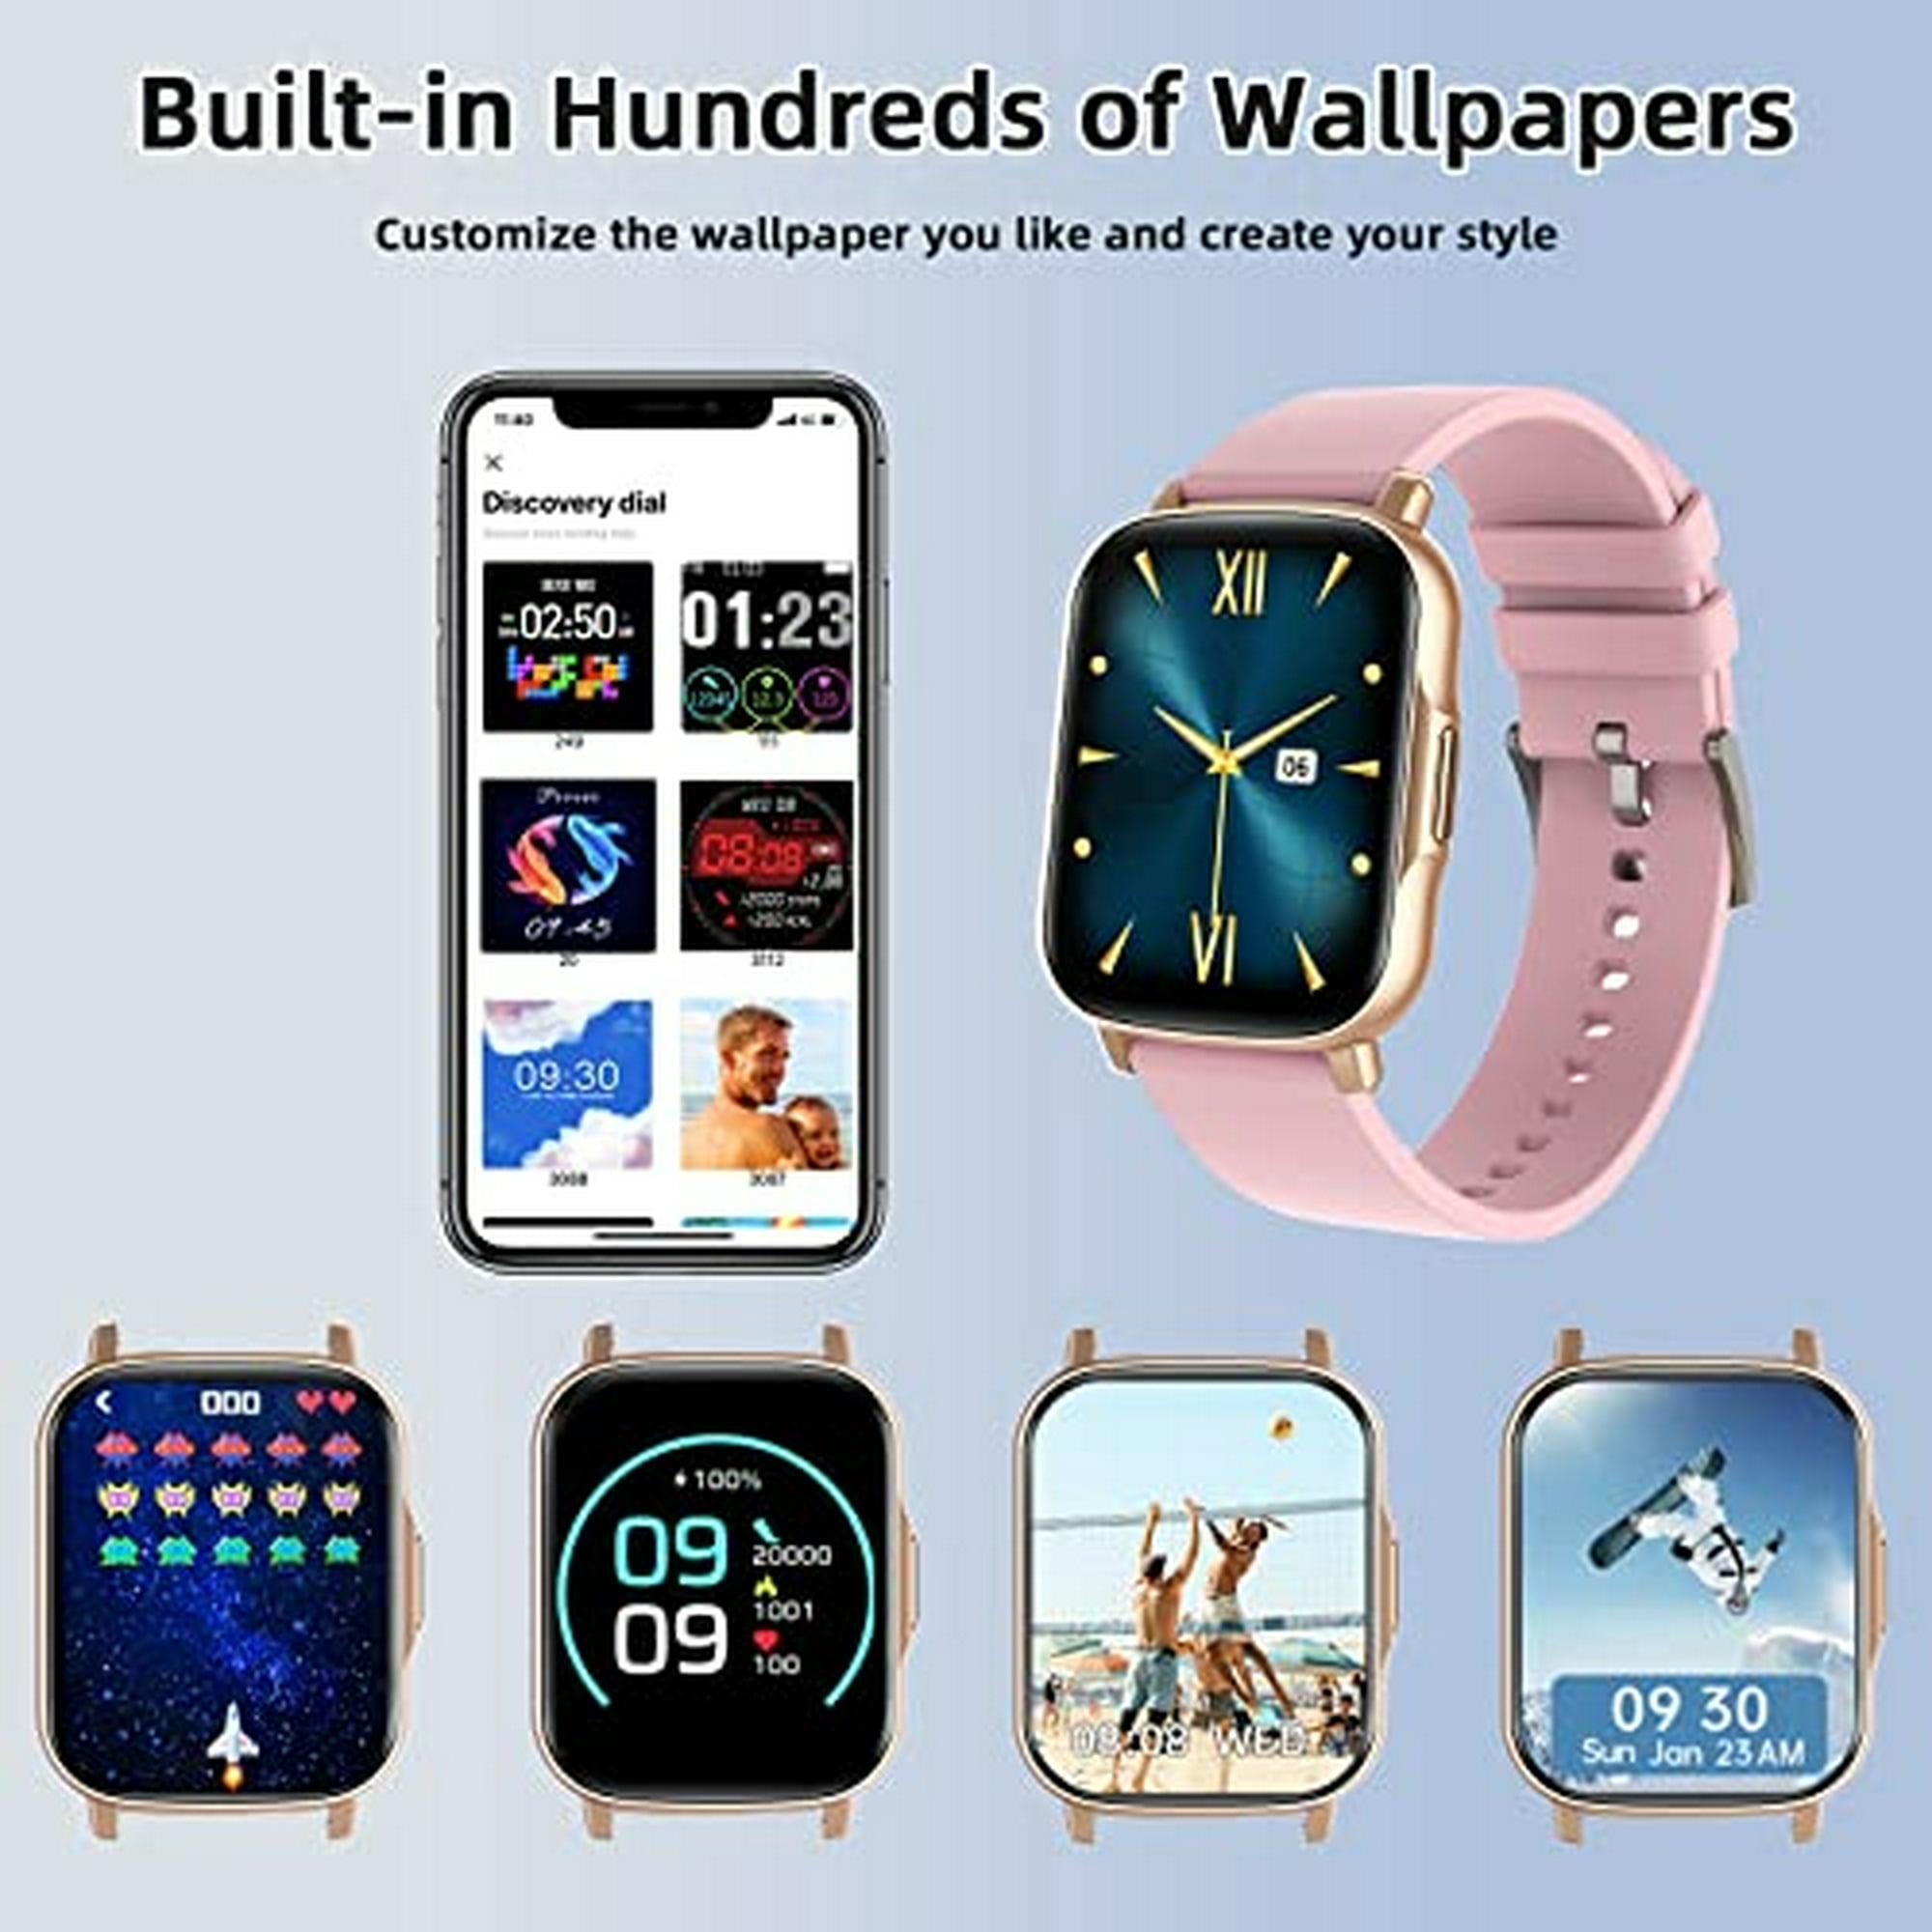 Reloj Inteligente Compatible con Teléfonos iPhone y Android 2022 Ver.,  HUAKUA 1.69 Relojes para Hombre Mujer Reloj Digital Fitness Tracker con  Frecuencia Cardíaca/Oxígeno en Sangre/Monitor de Sueño 5